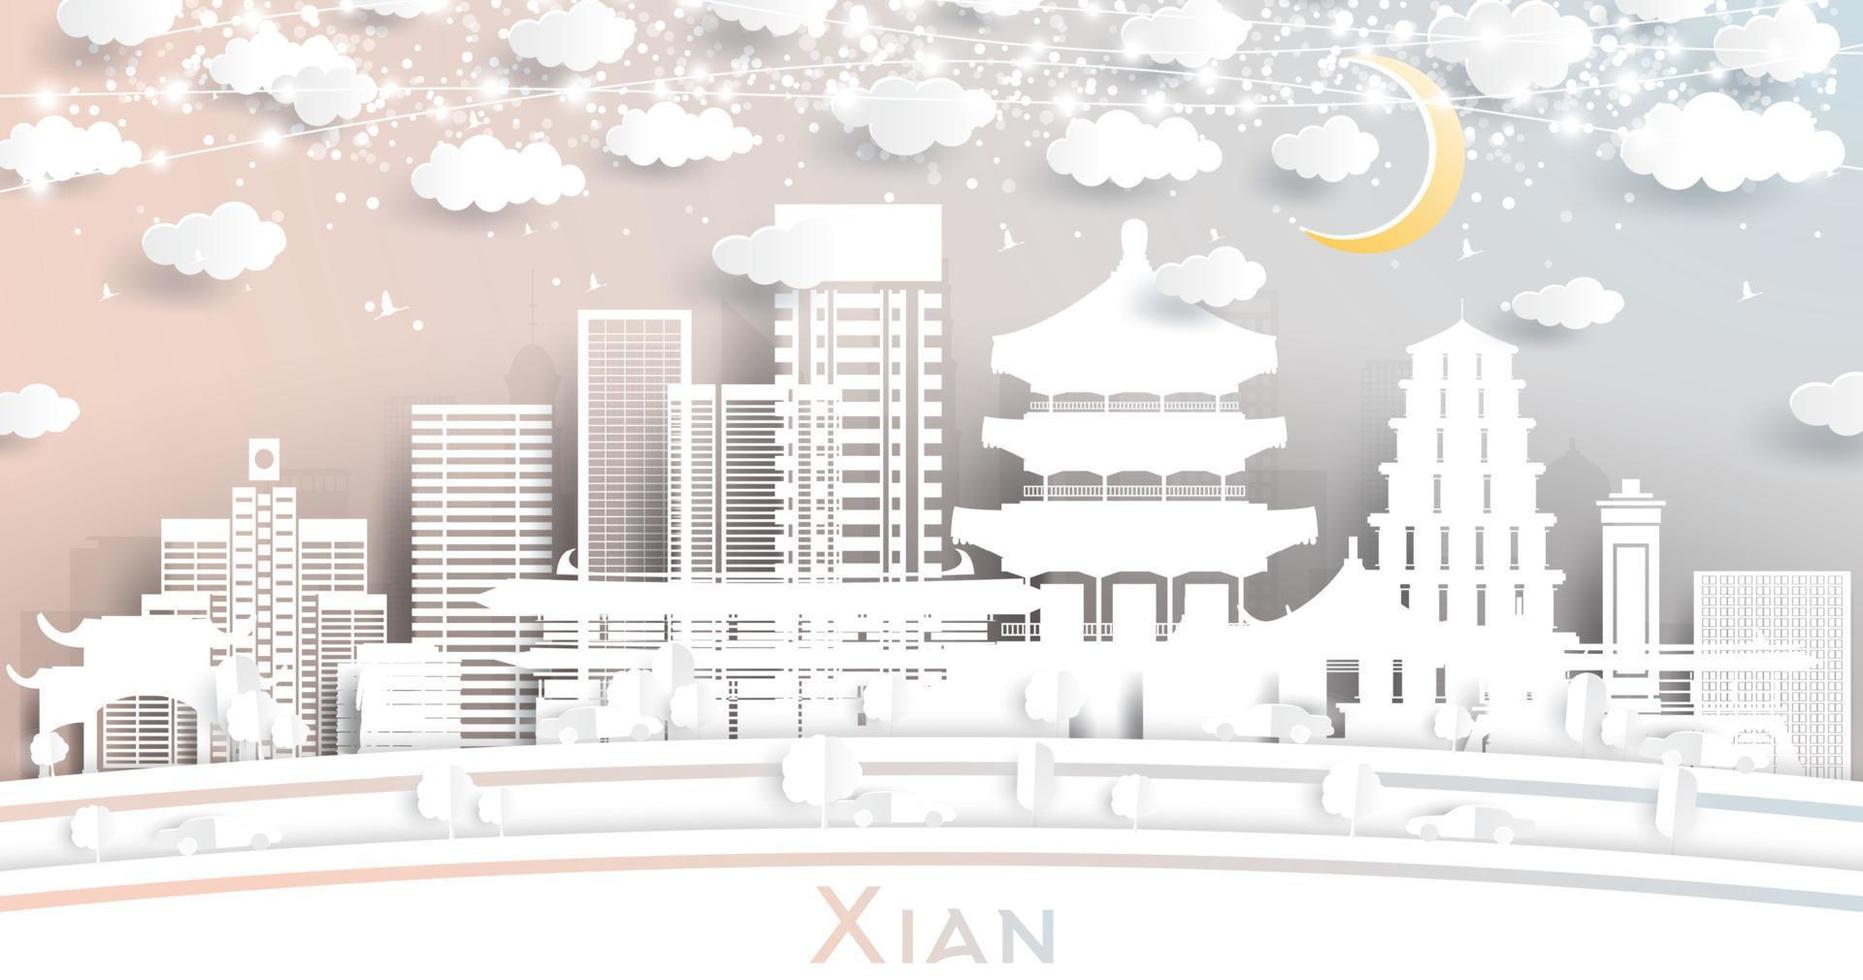 xian China stad horizon in papier besnoeiing stijl met wit gebouwen, maan en neon guirlande. vector